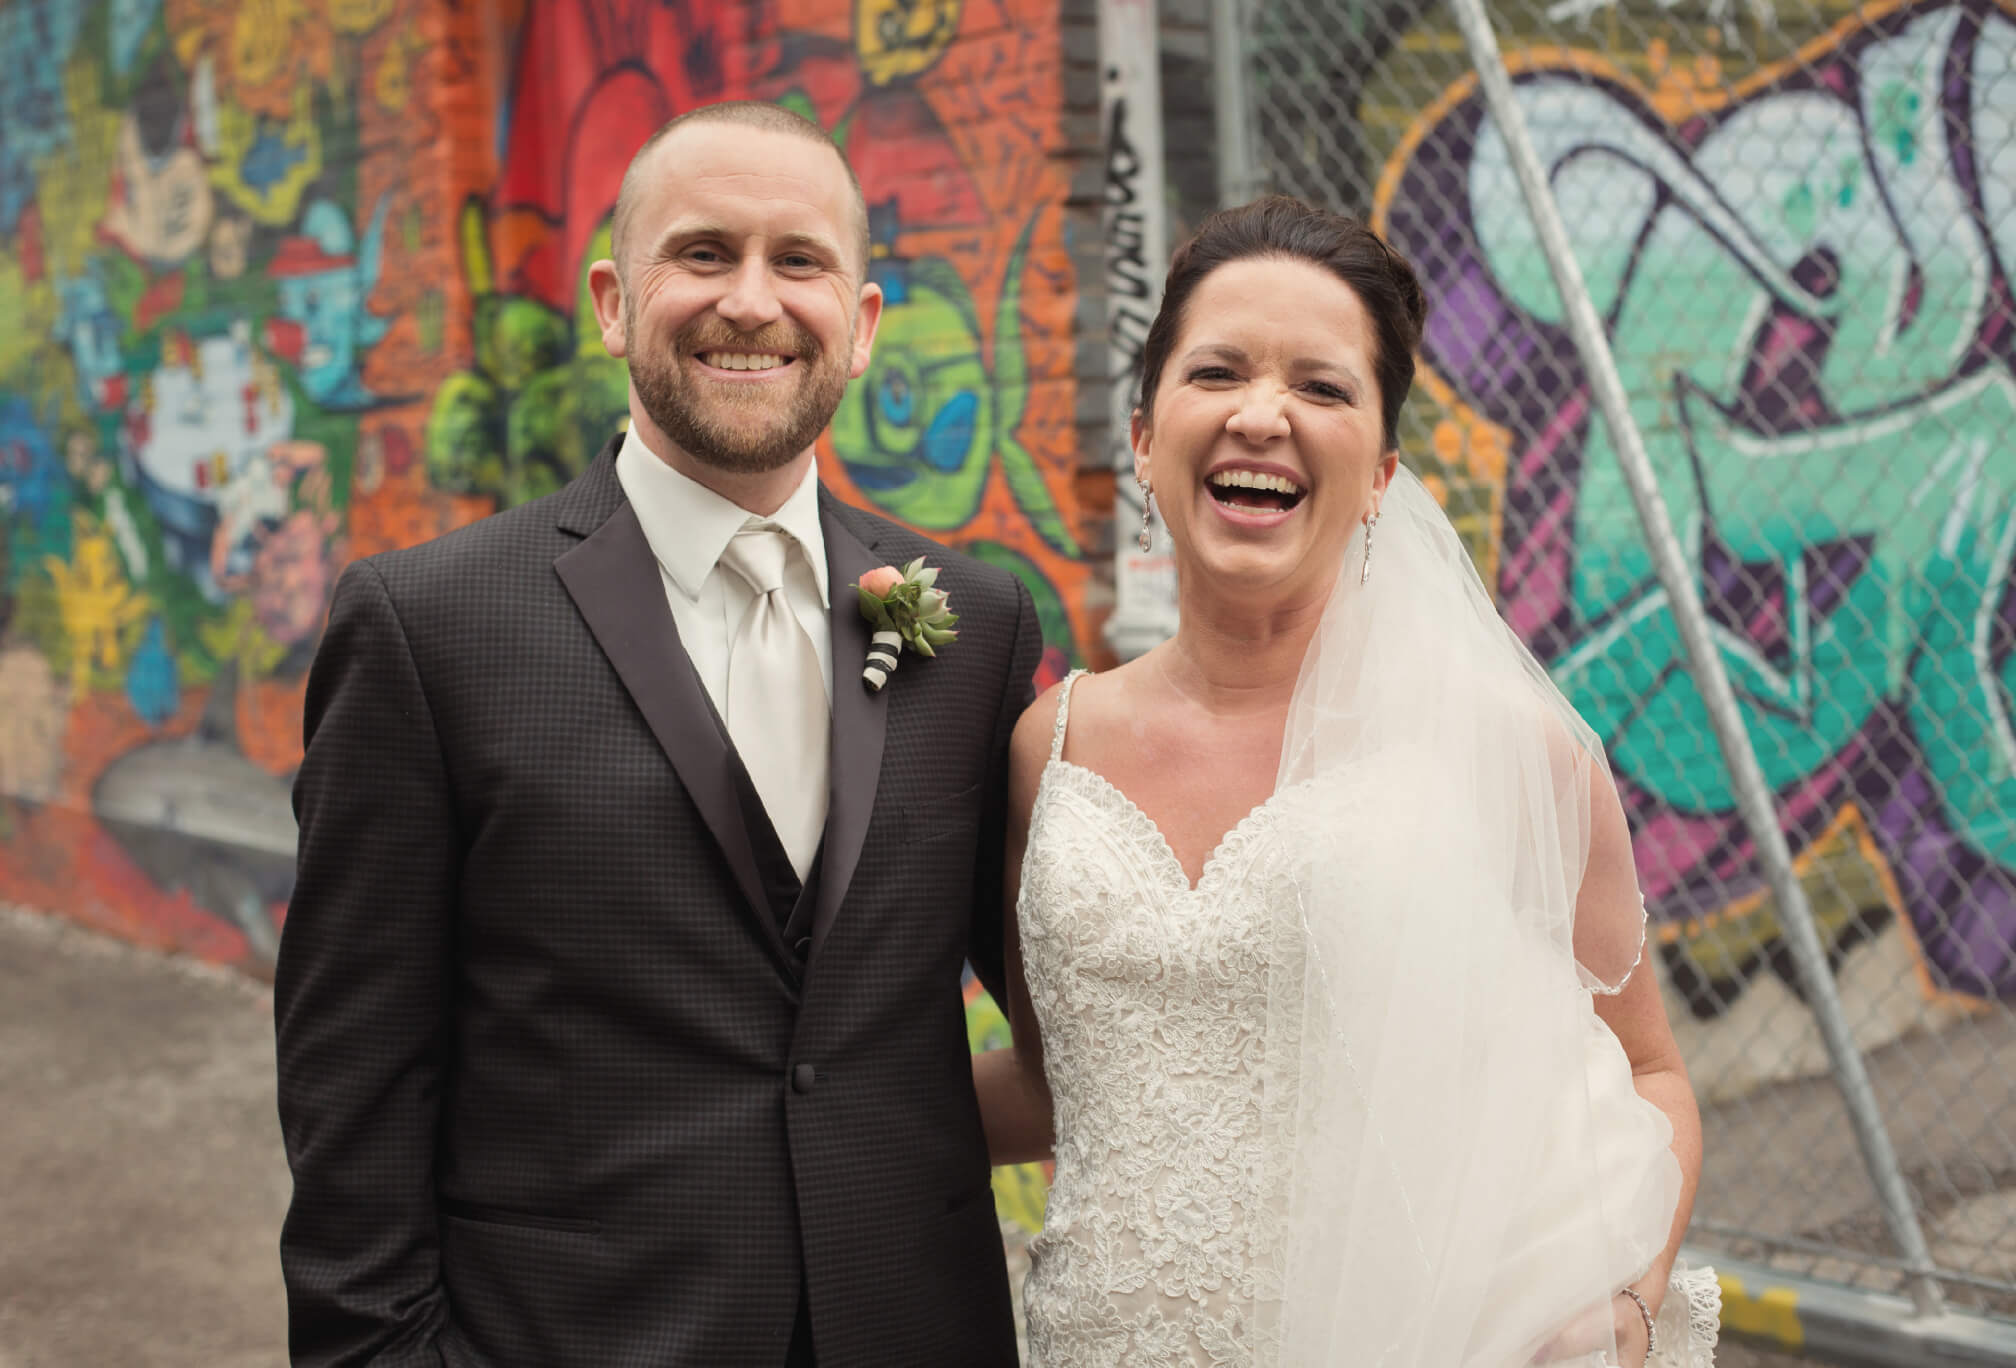 grafitti alley wedding photography